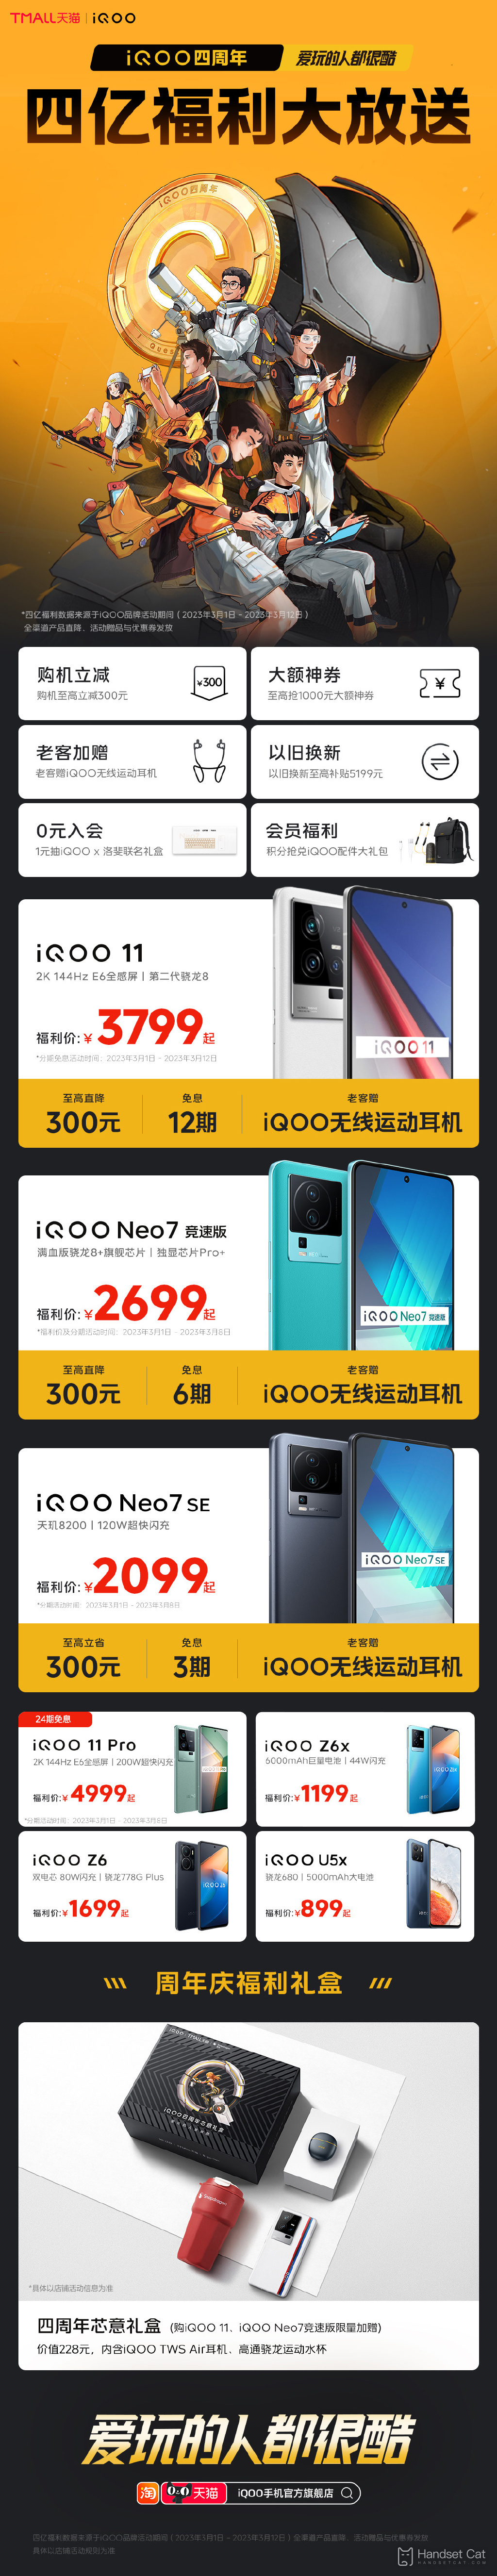 iQOO offre des avantages pour son quatrième anniversaire, avec des réductions allant jusqu'à 300 yuans sur iQOO 11 et d'autres modèles